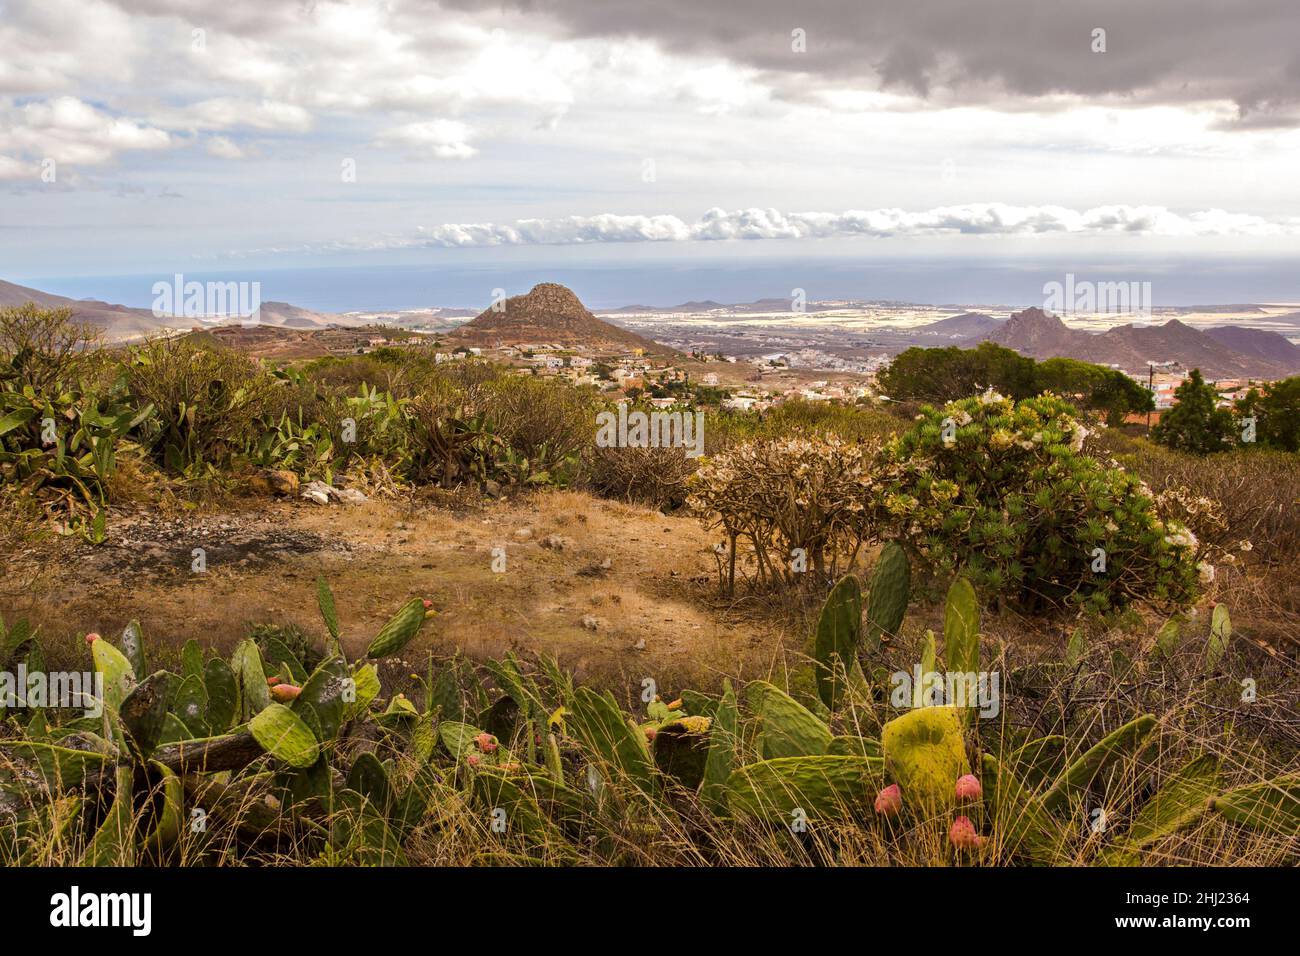 Wunderschöne Landschaft mit endemischen Pflanzen und Bergen auf Teneriffa. Kanarische Inseln, Spanien. Stockfoto